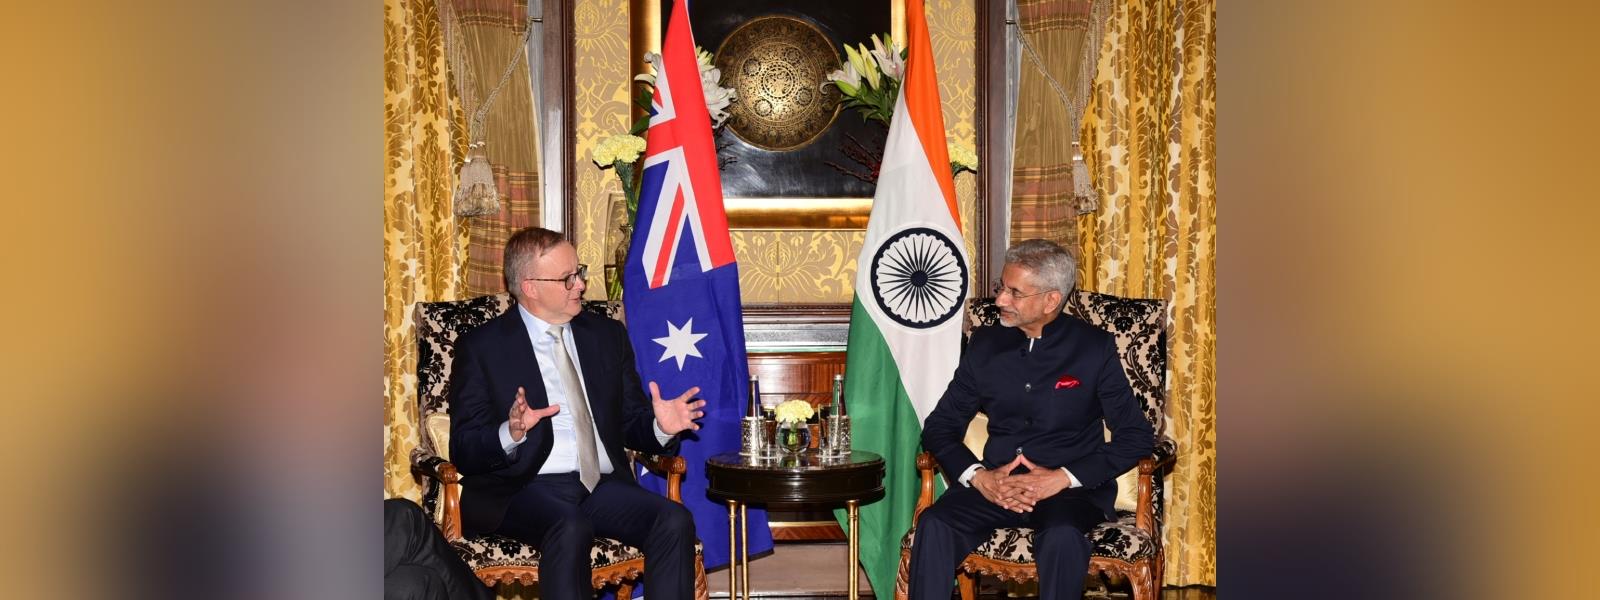 External Affairs Minister Dr. S. Jaishankar called on H. E. Mr. Anthony Albanese, Prime Minister of Australia in New Delhi